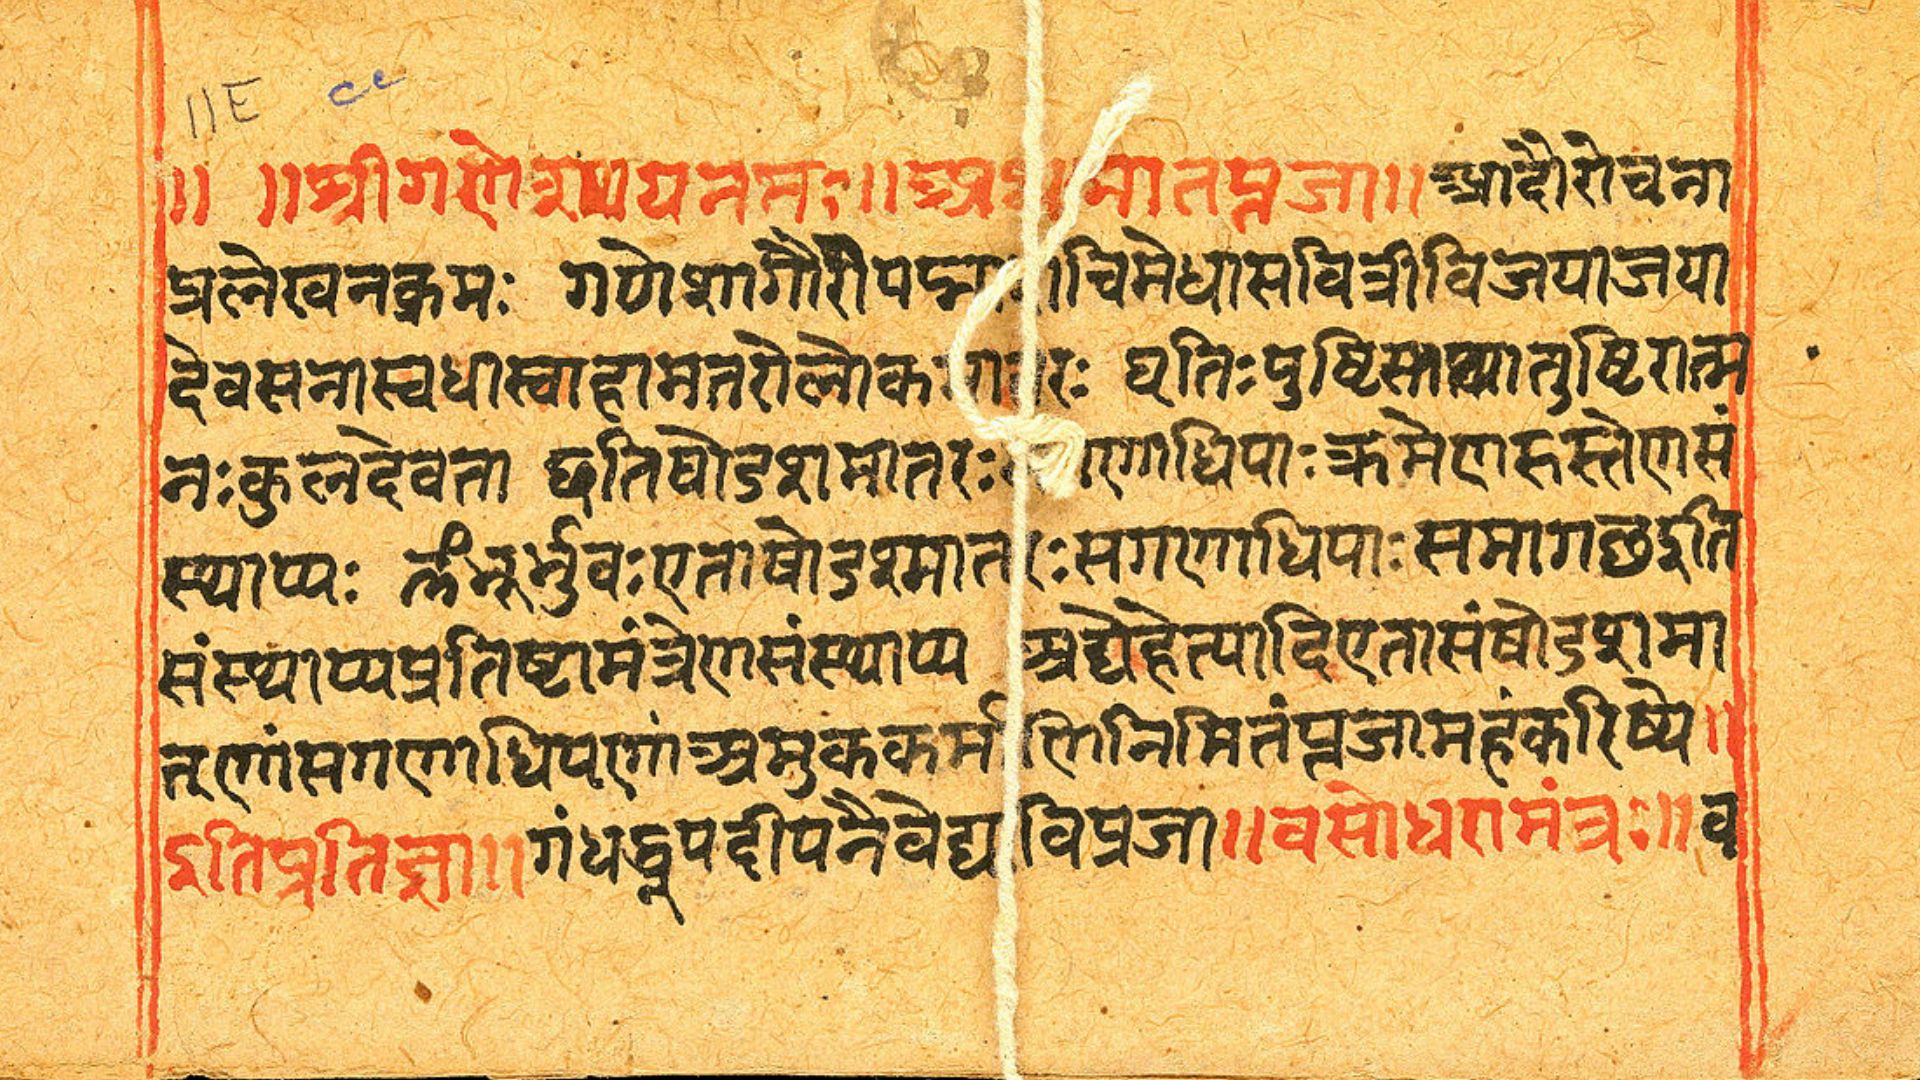 Studying Sanskrit